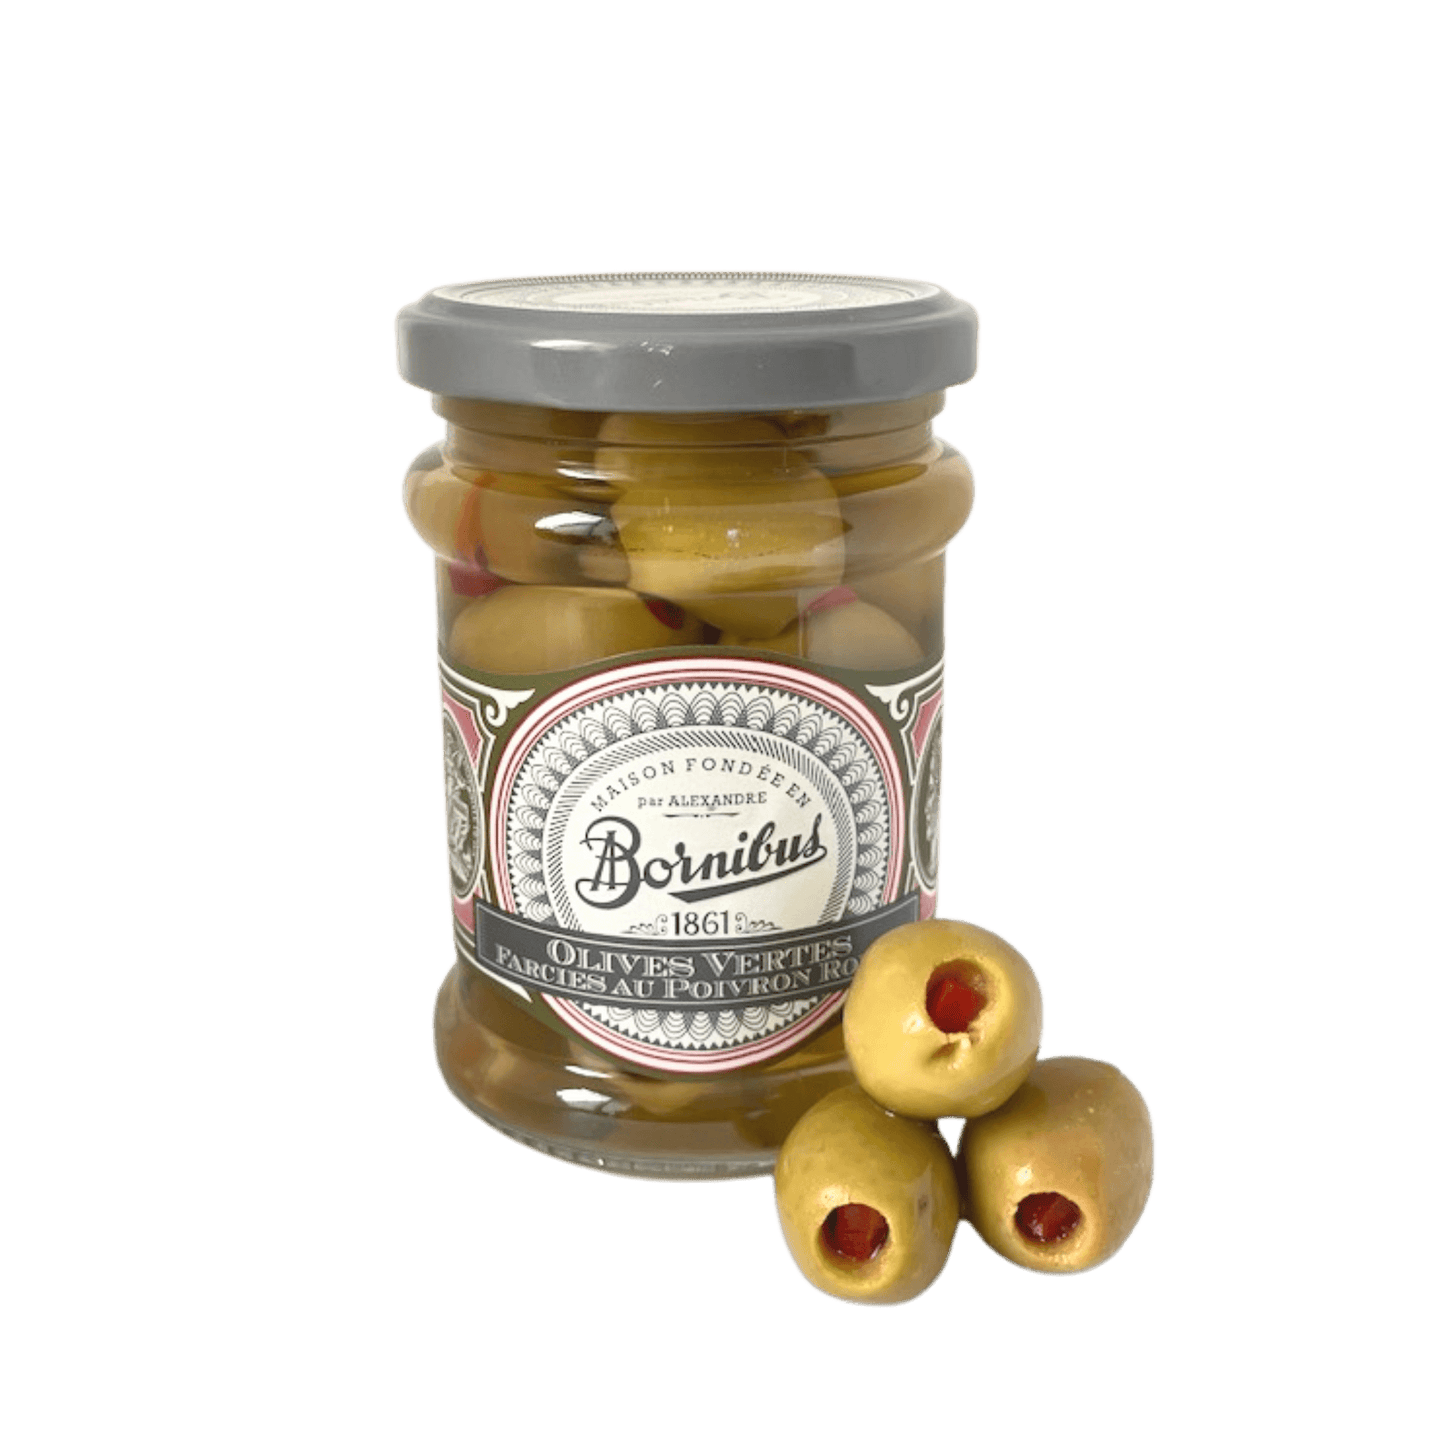 Grüne Oliven - gefüllt mit Paprika | Bornibus | Frankreich